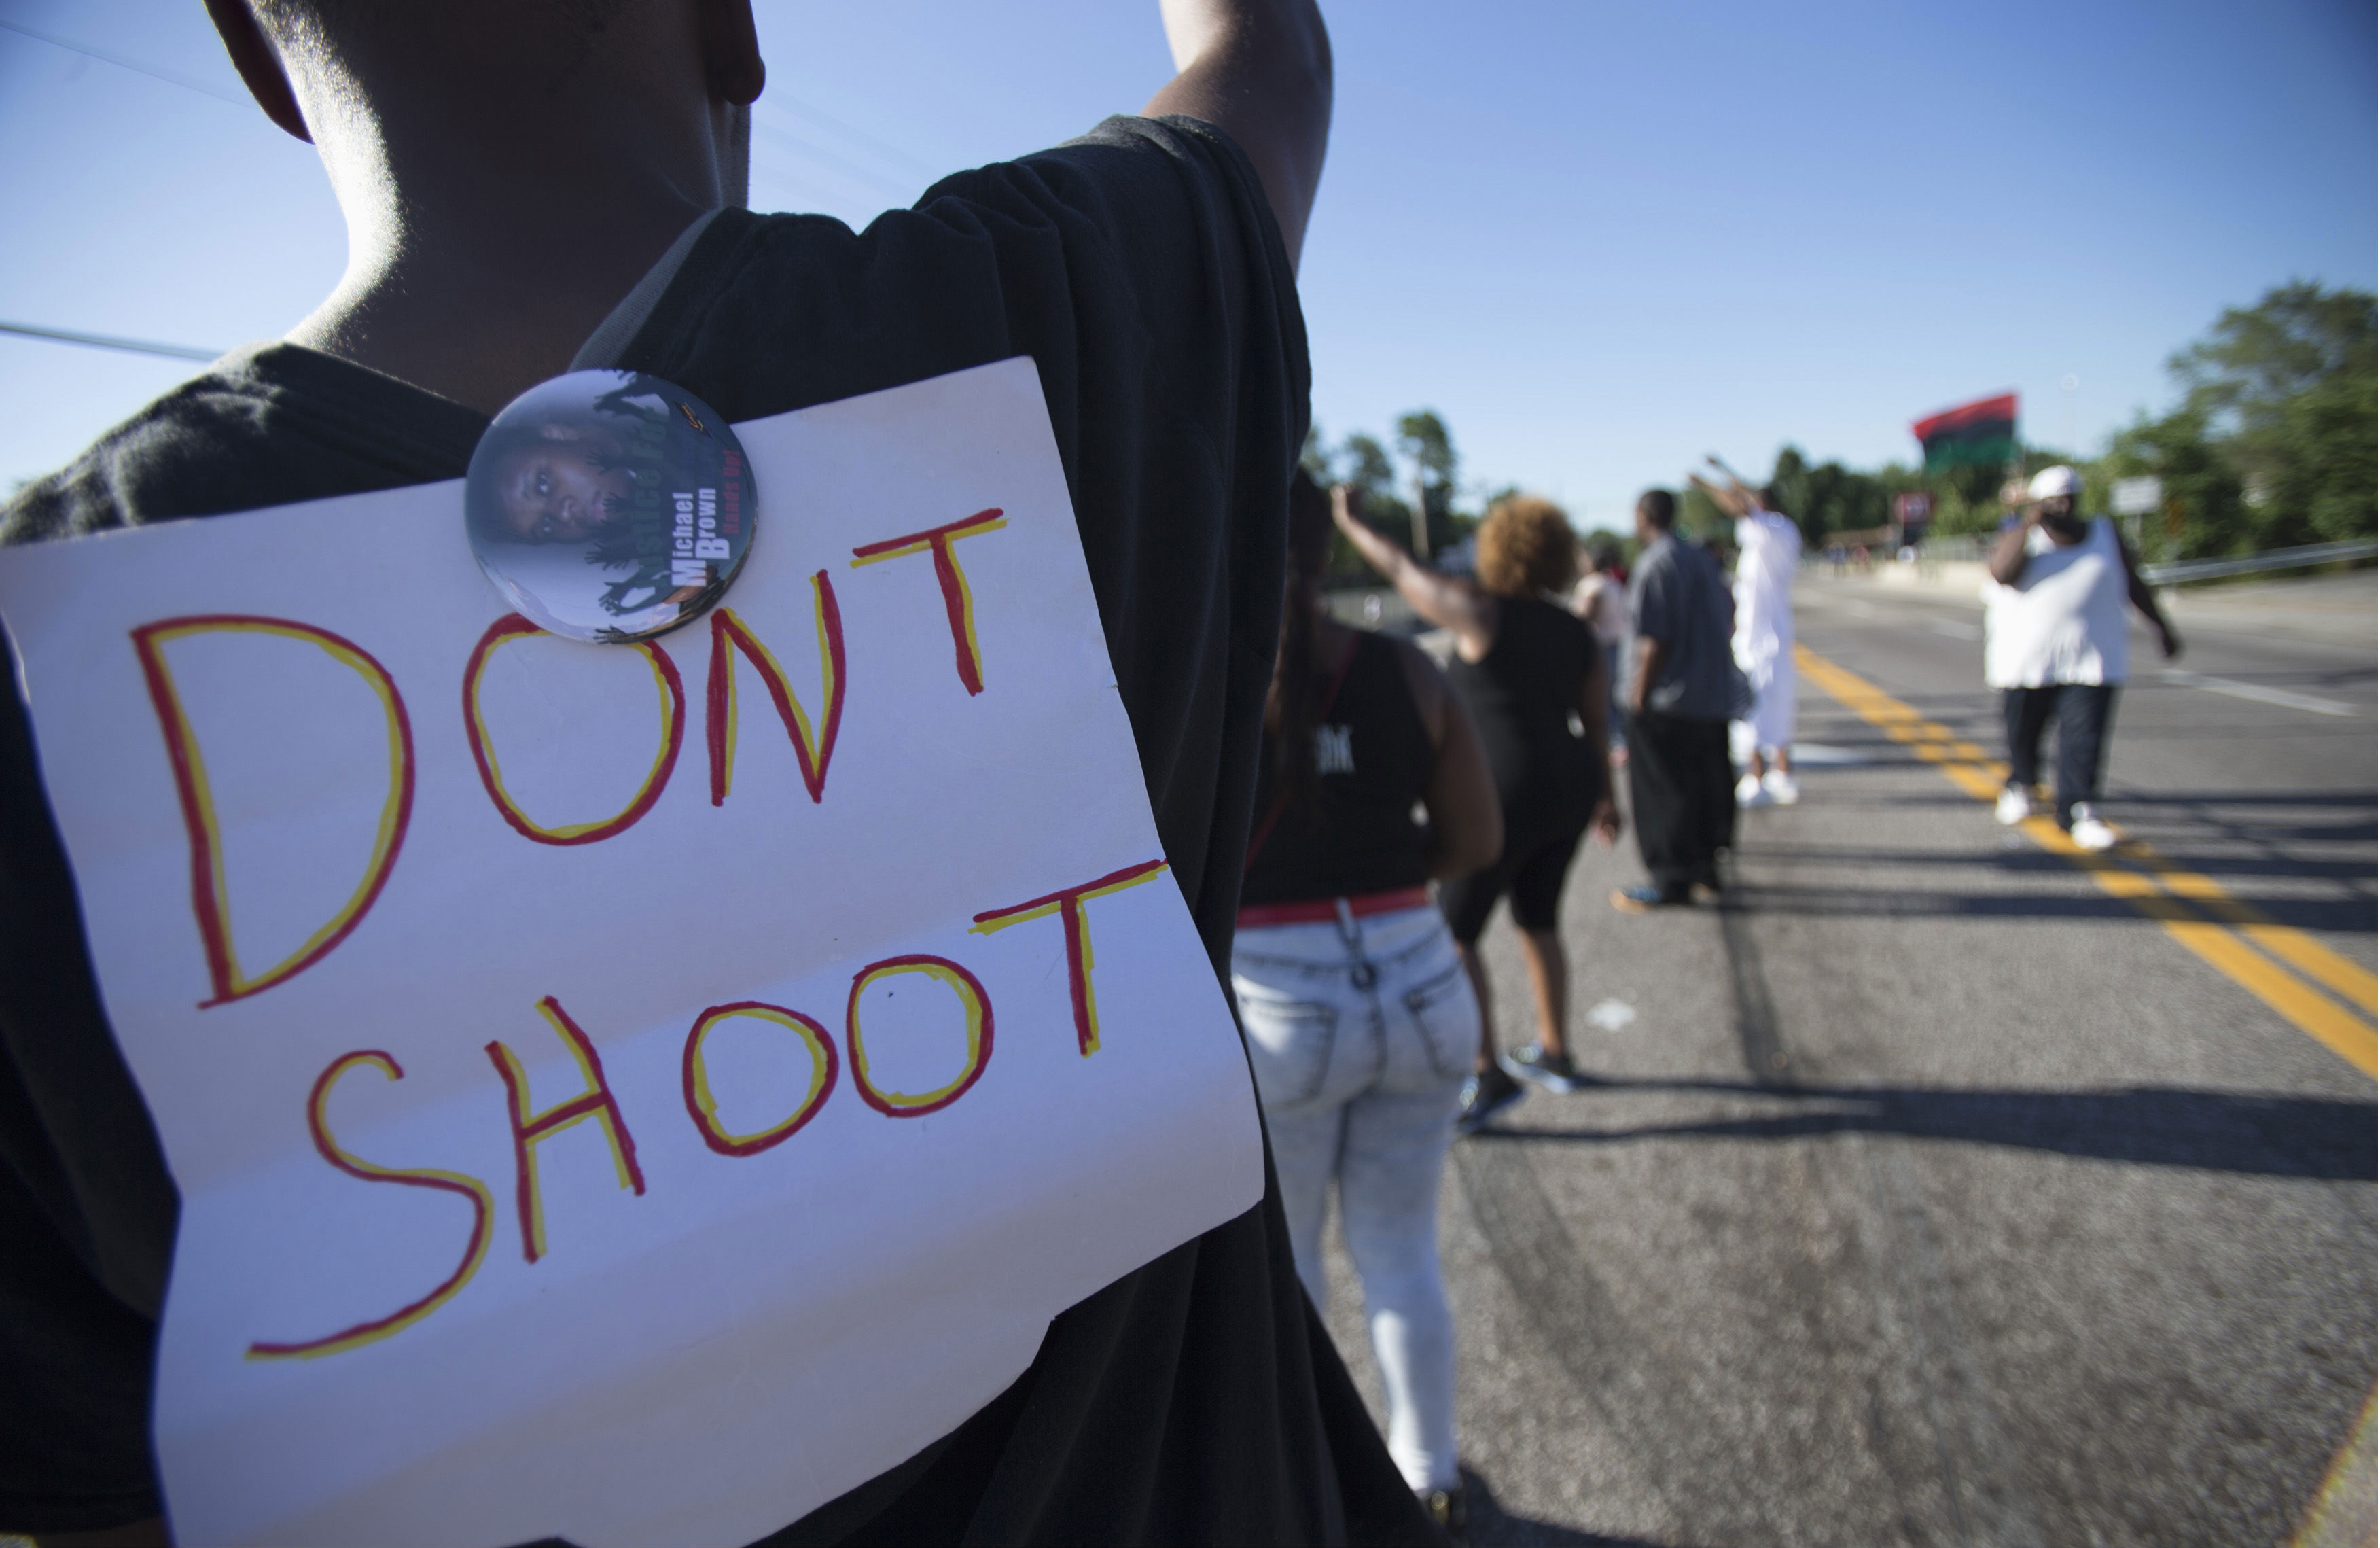 What Matters in Ferguson